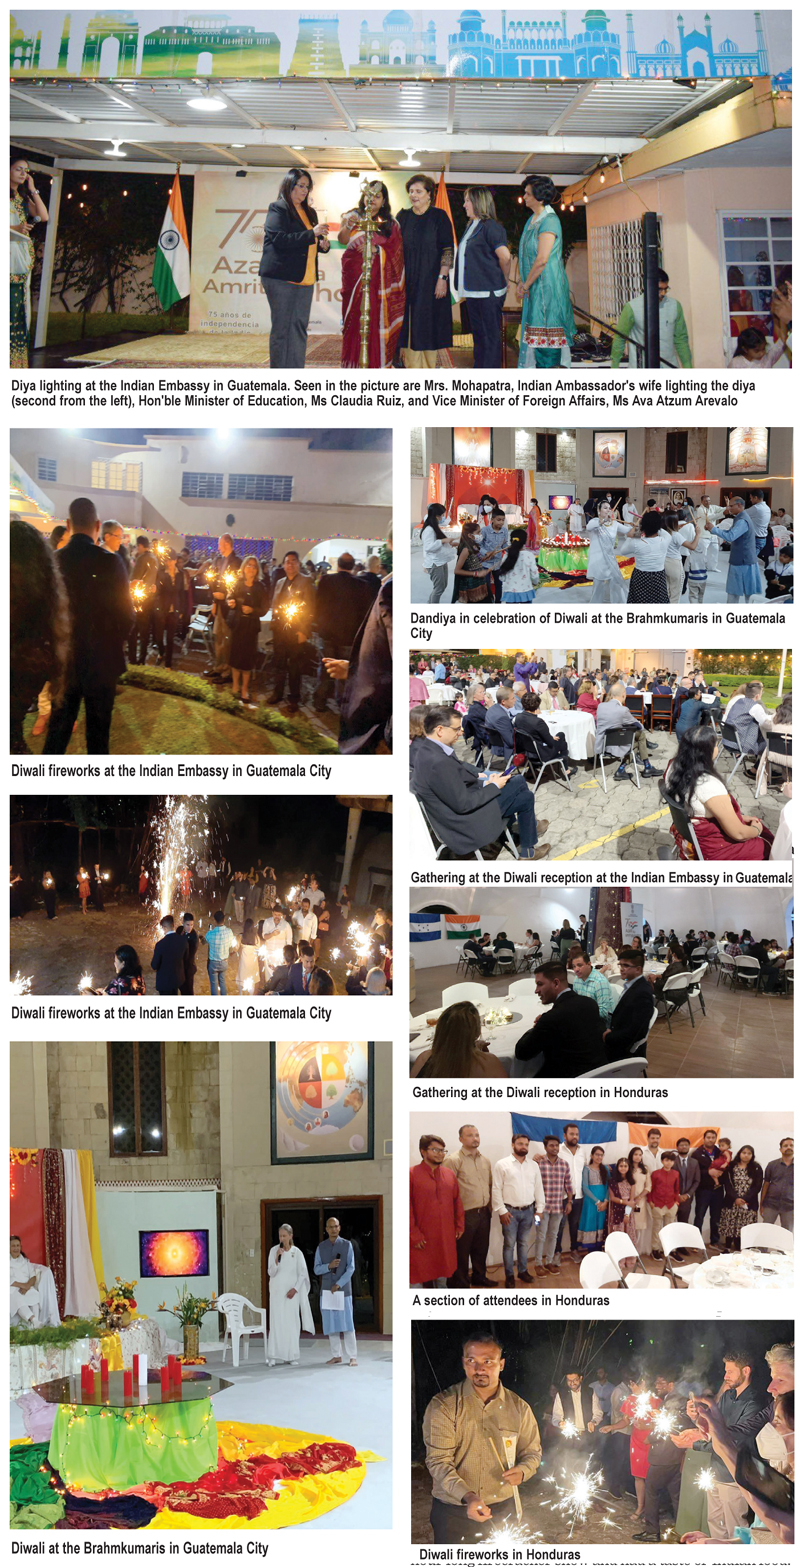 Celebraciones de Diwali en Guatemala y Honduras — El Panorama Indio